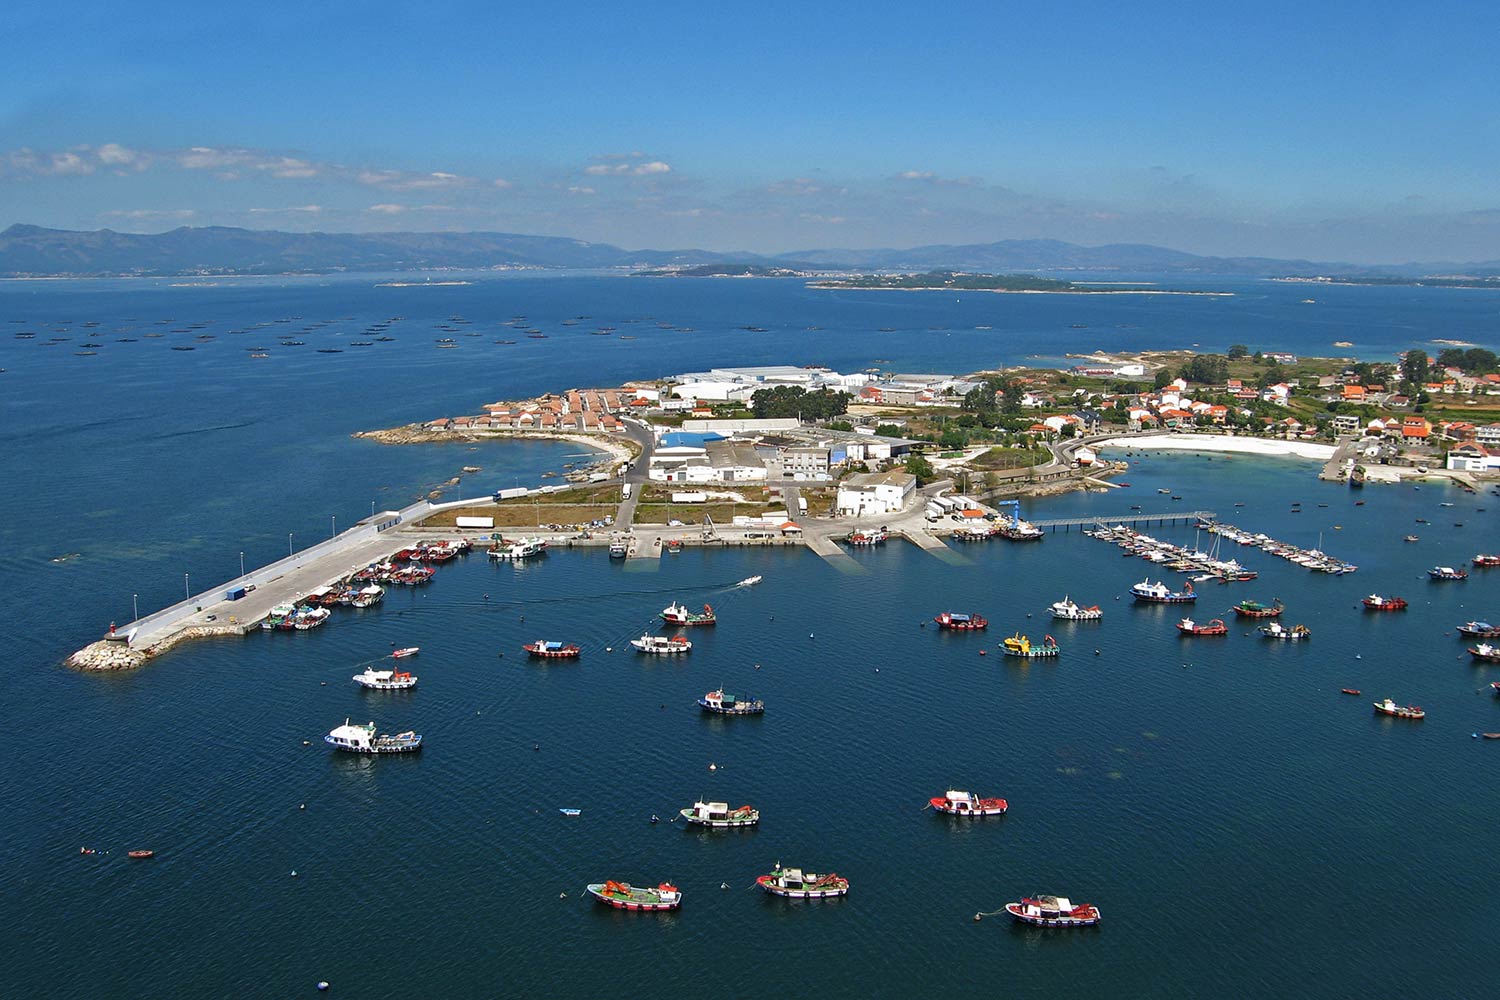 Salidas de pesca deportiva en Barco desde O Porto do Meloxo desde sus playas y espigones